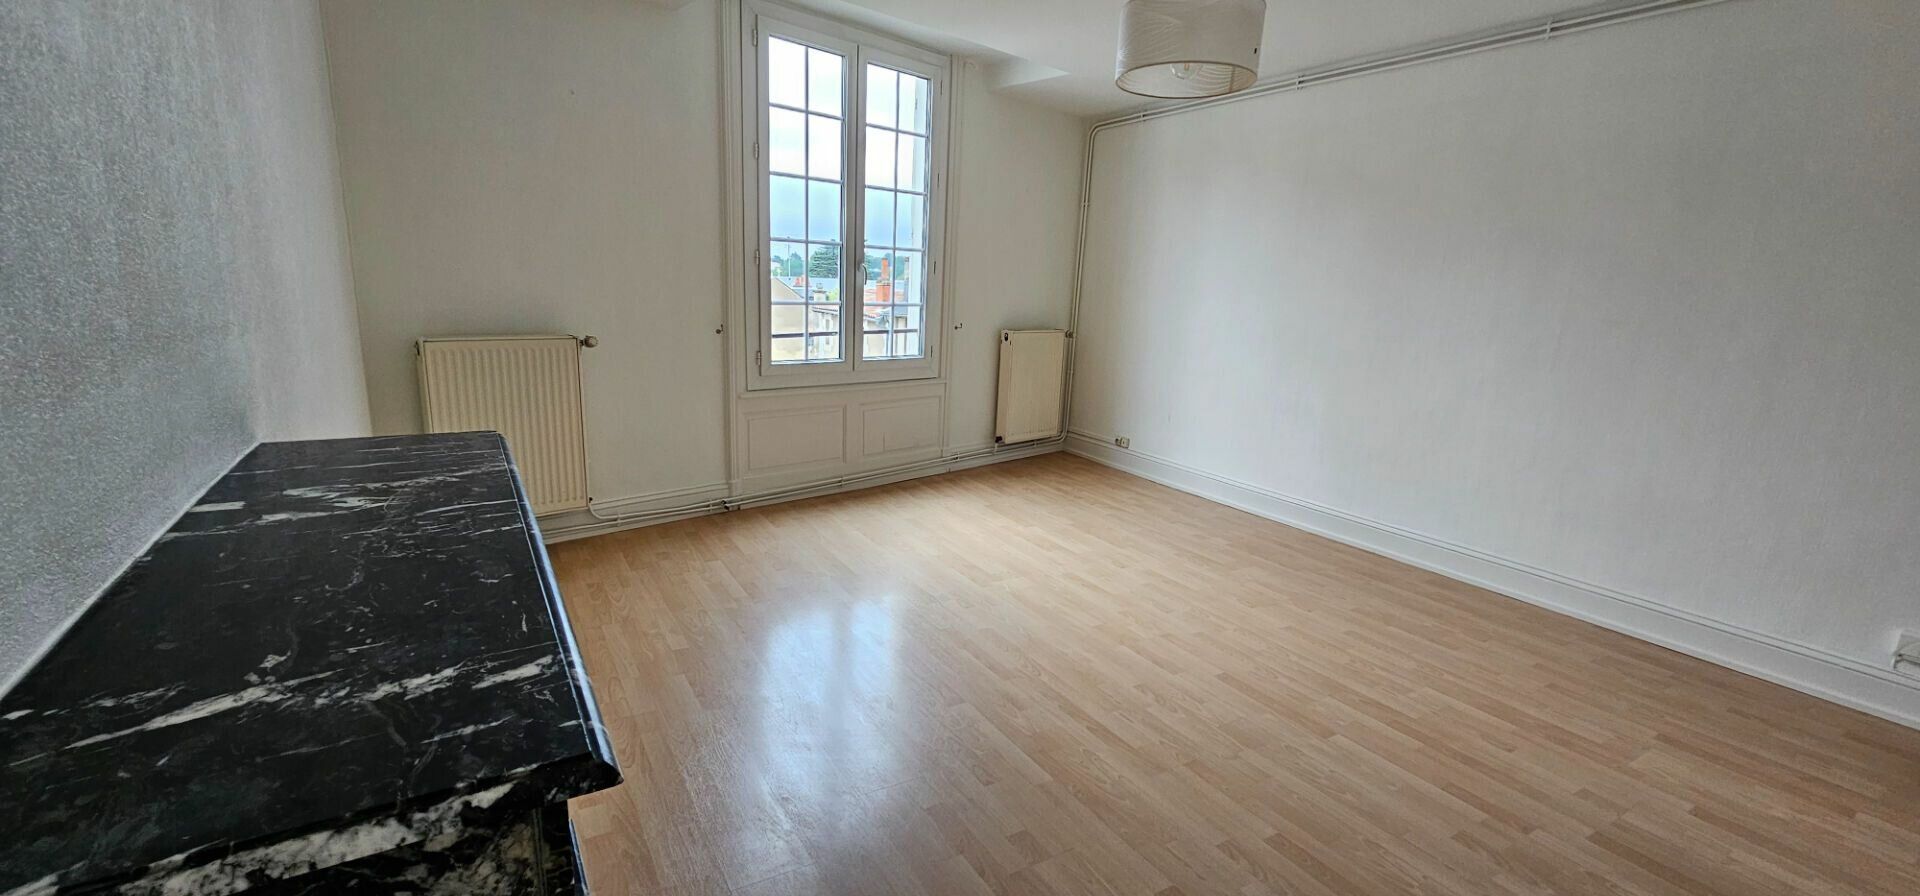 Appartement à vendre 2 71.31m2 à Poitiers vignette-5